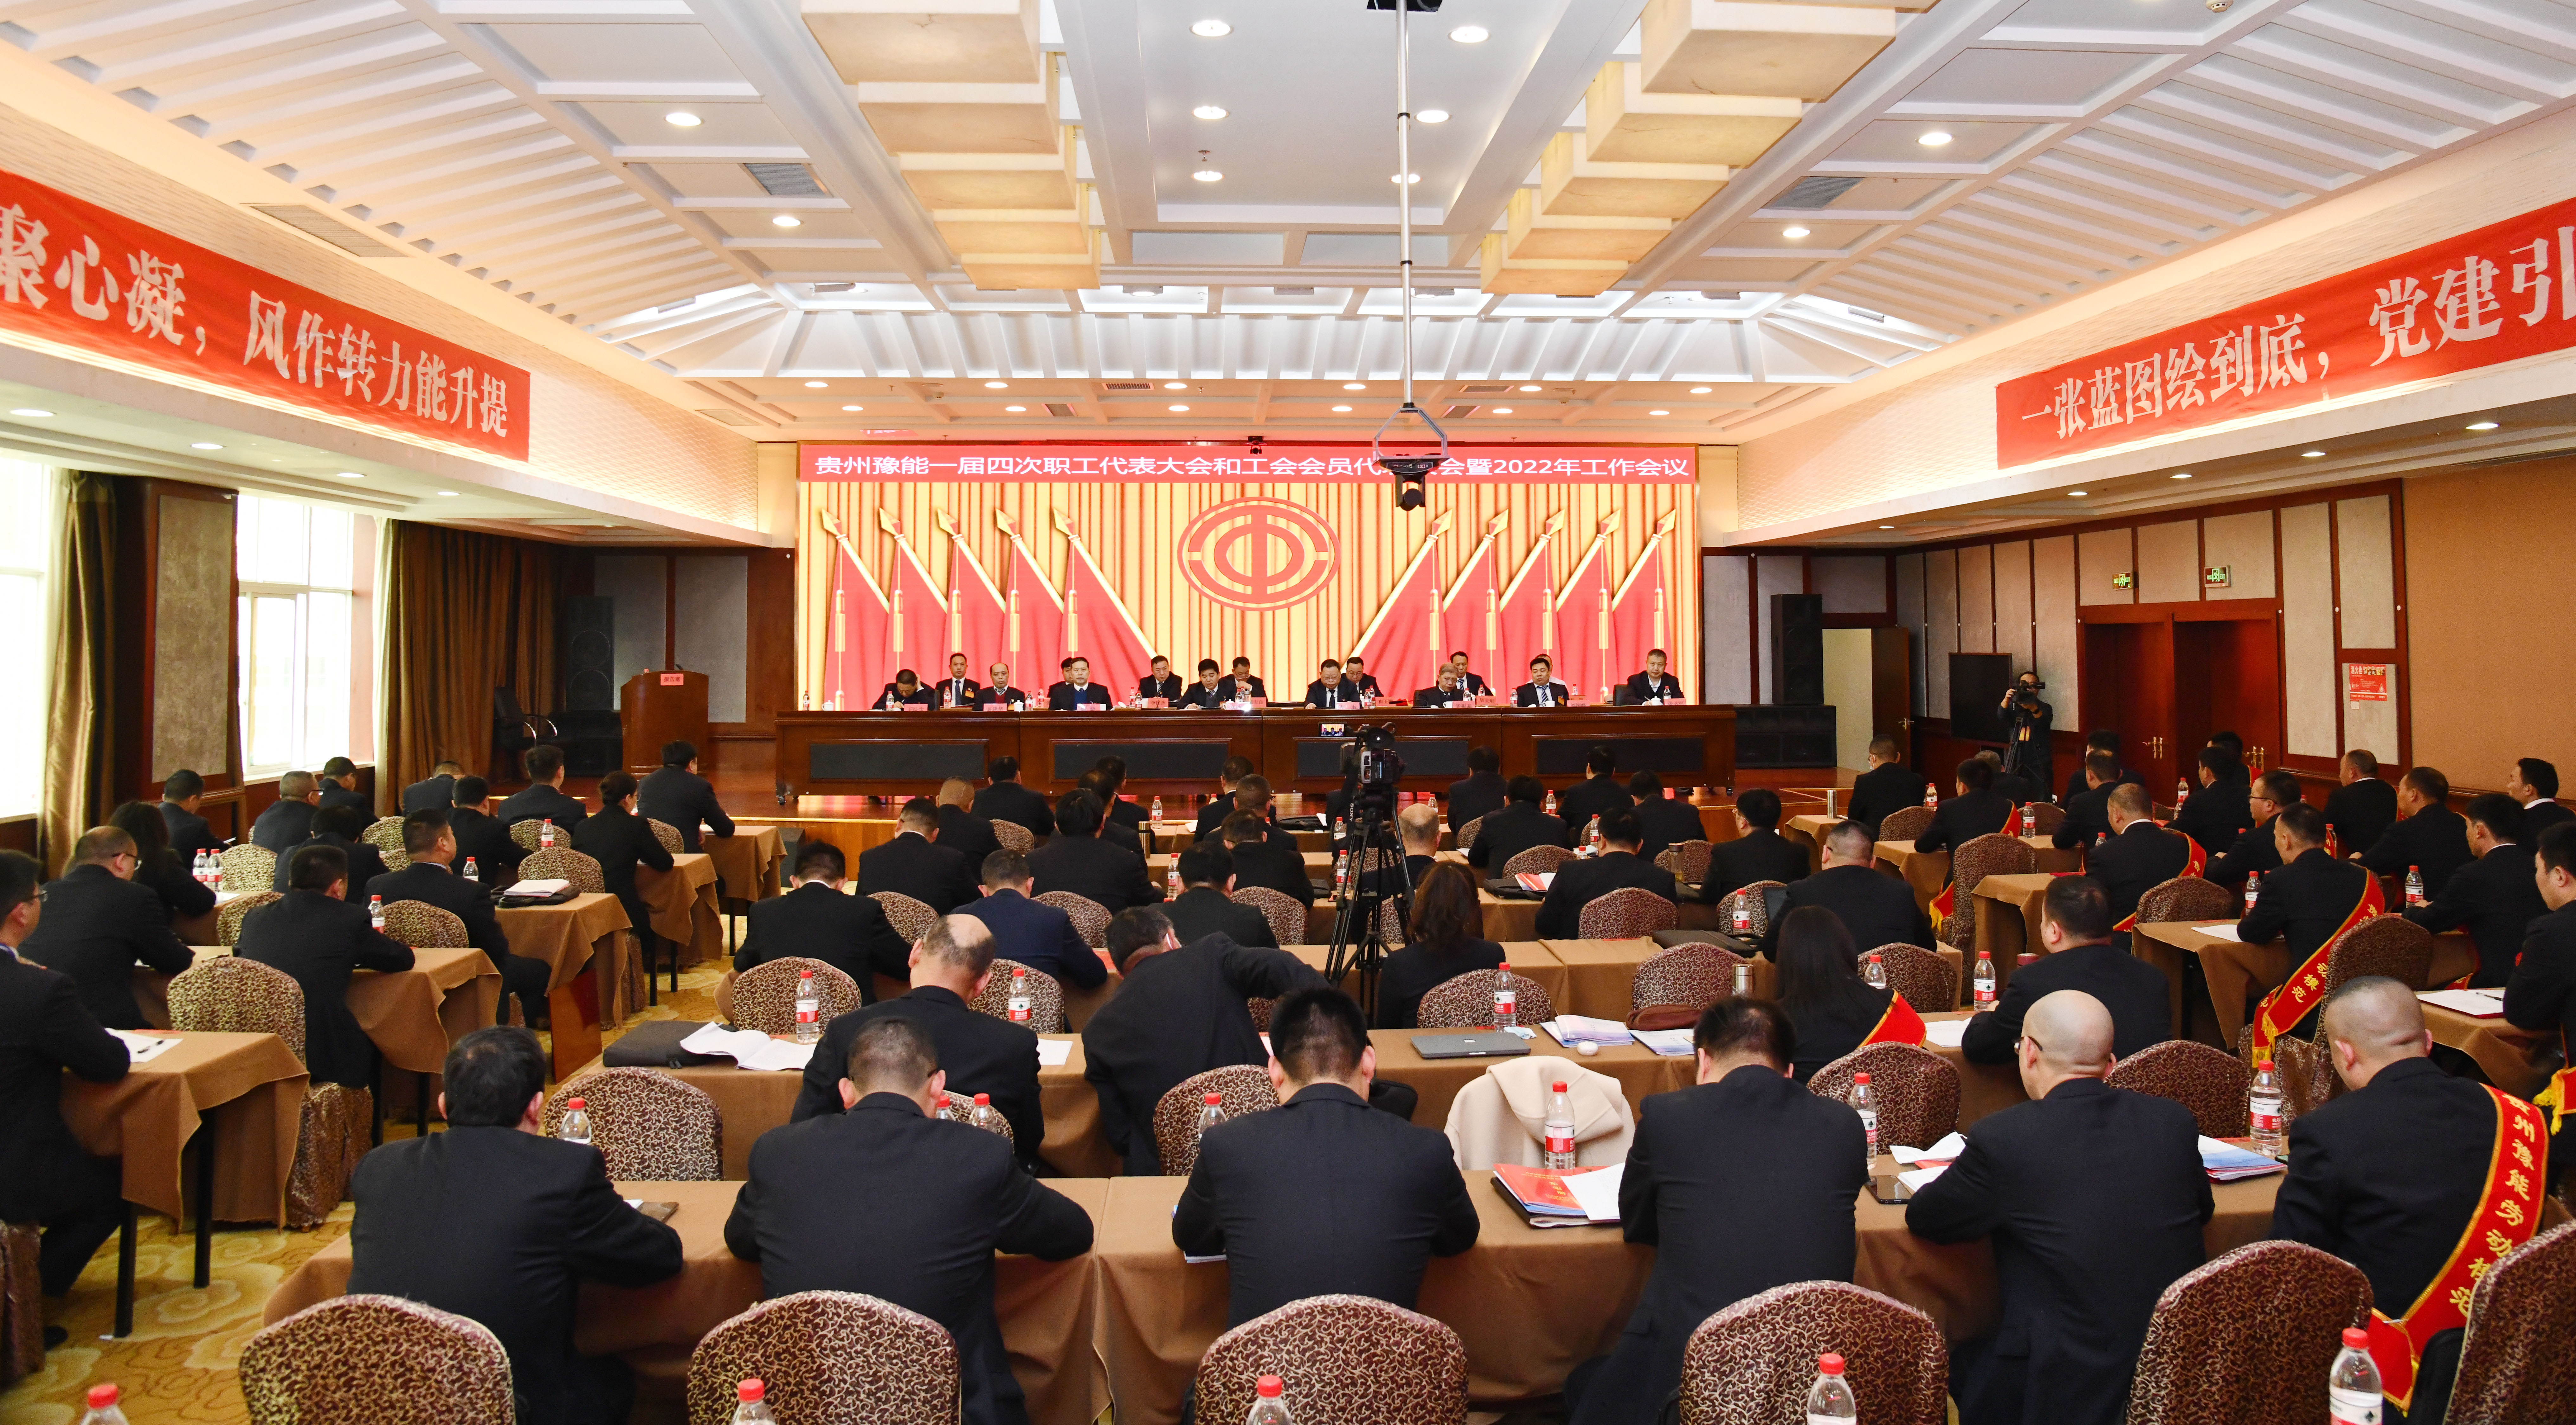 贵州豫能一届四次职代会和工会会员代表大会暨2022年工作会议召开